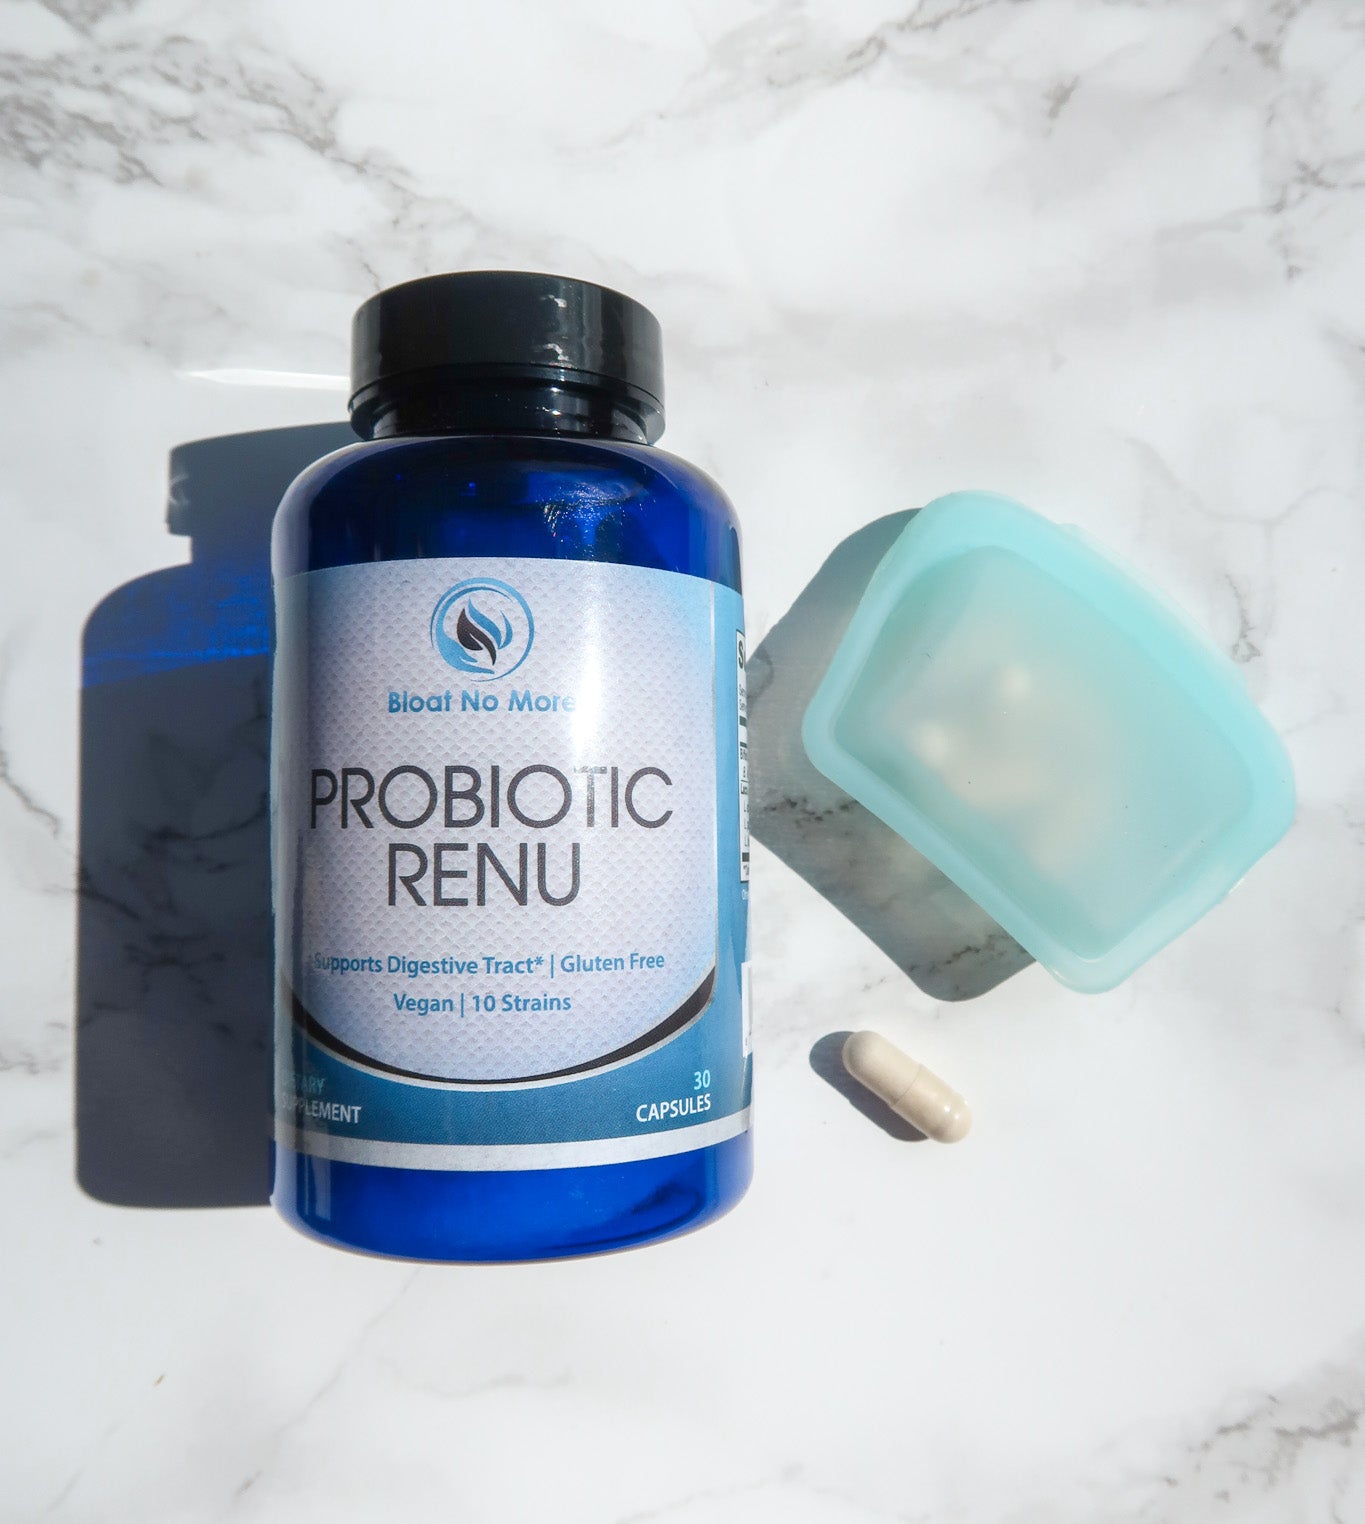 Probiotic Renu Travel Pouch